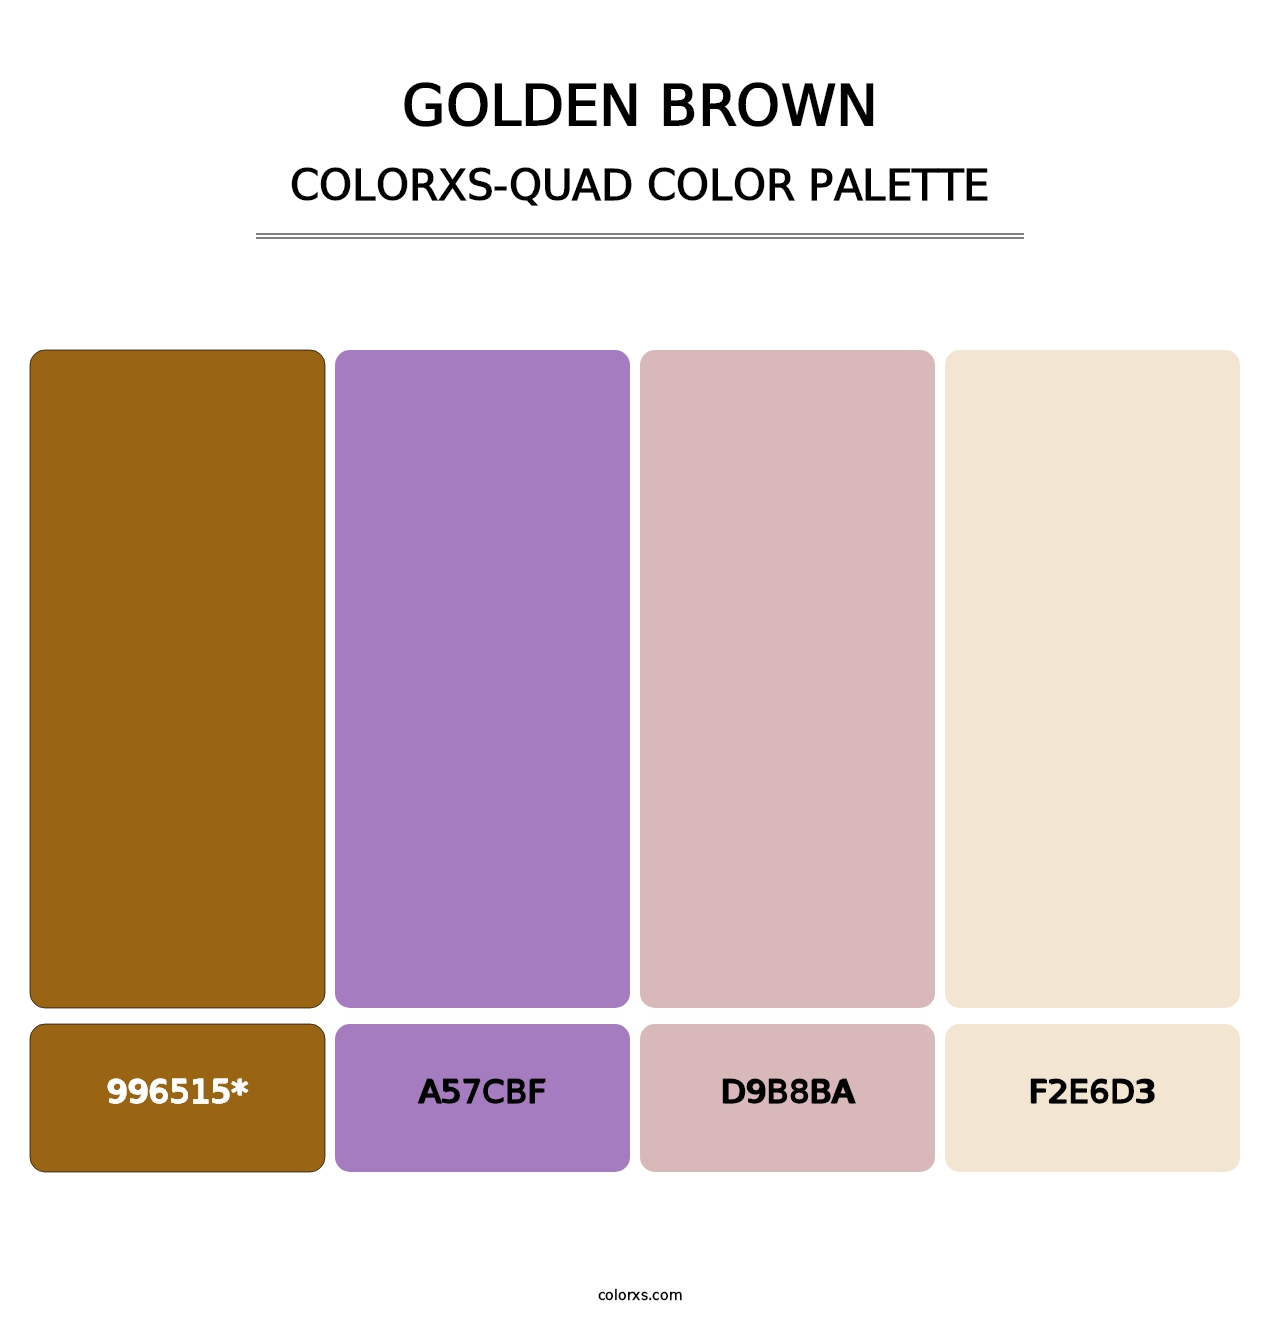 Golden brown - Colorxs Quad Palette